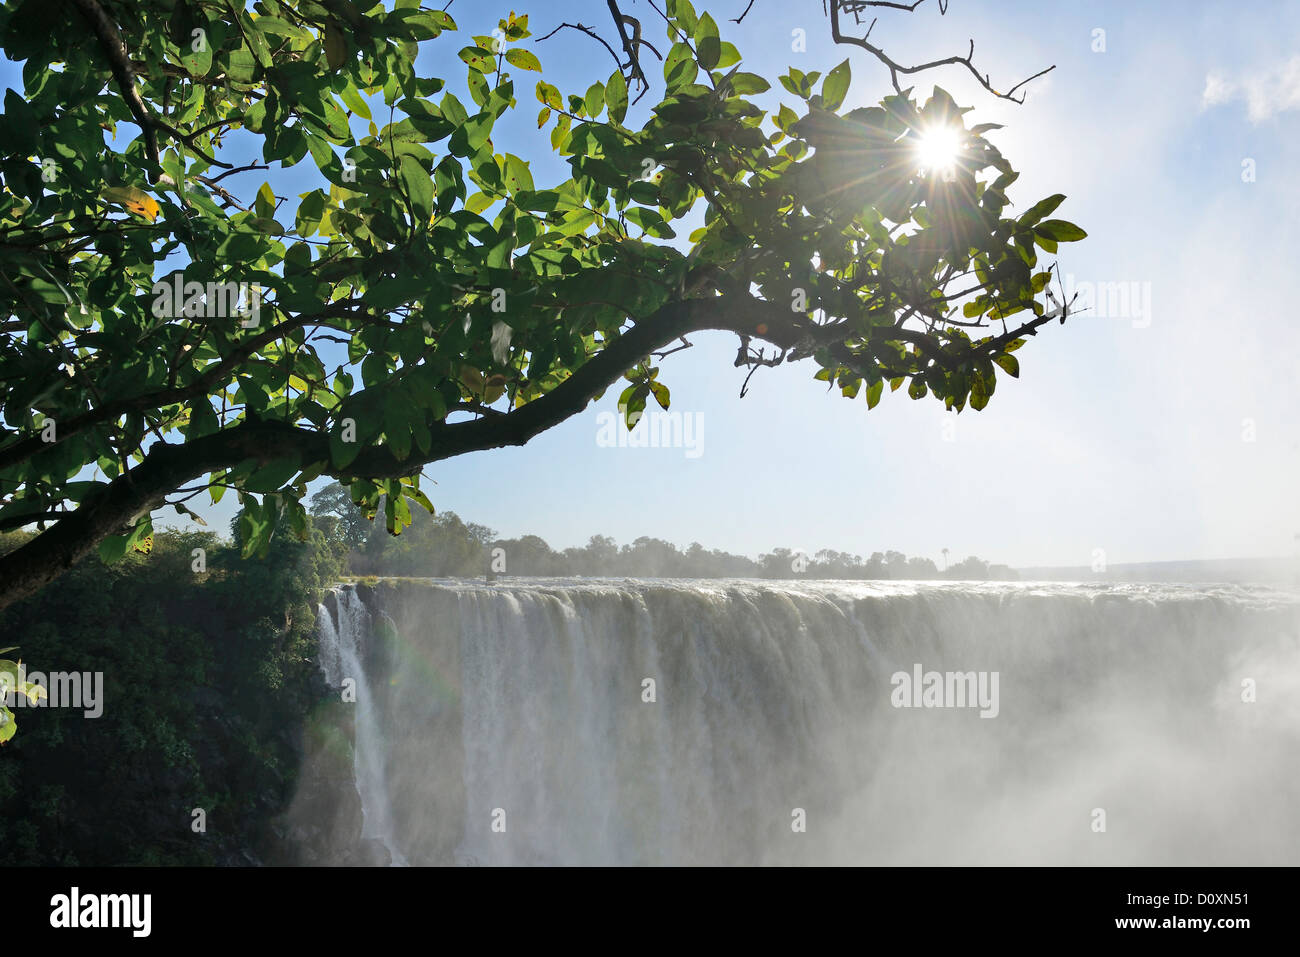 Africa, Zimbabwe, Zambezi, River, Southern Africa, Victoria Falls, waterfall, sun star, branch, water Stock Photo